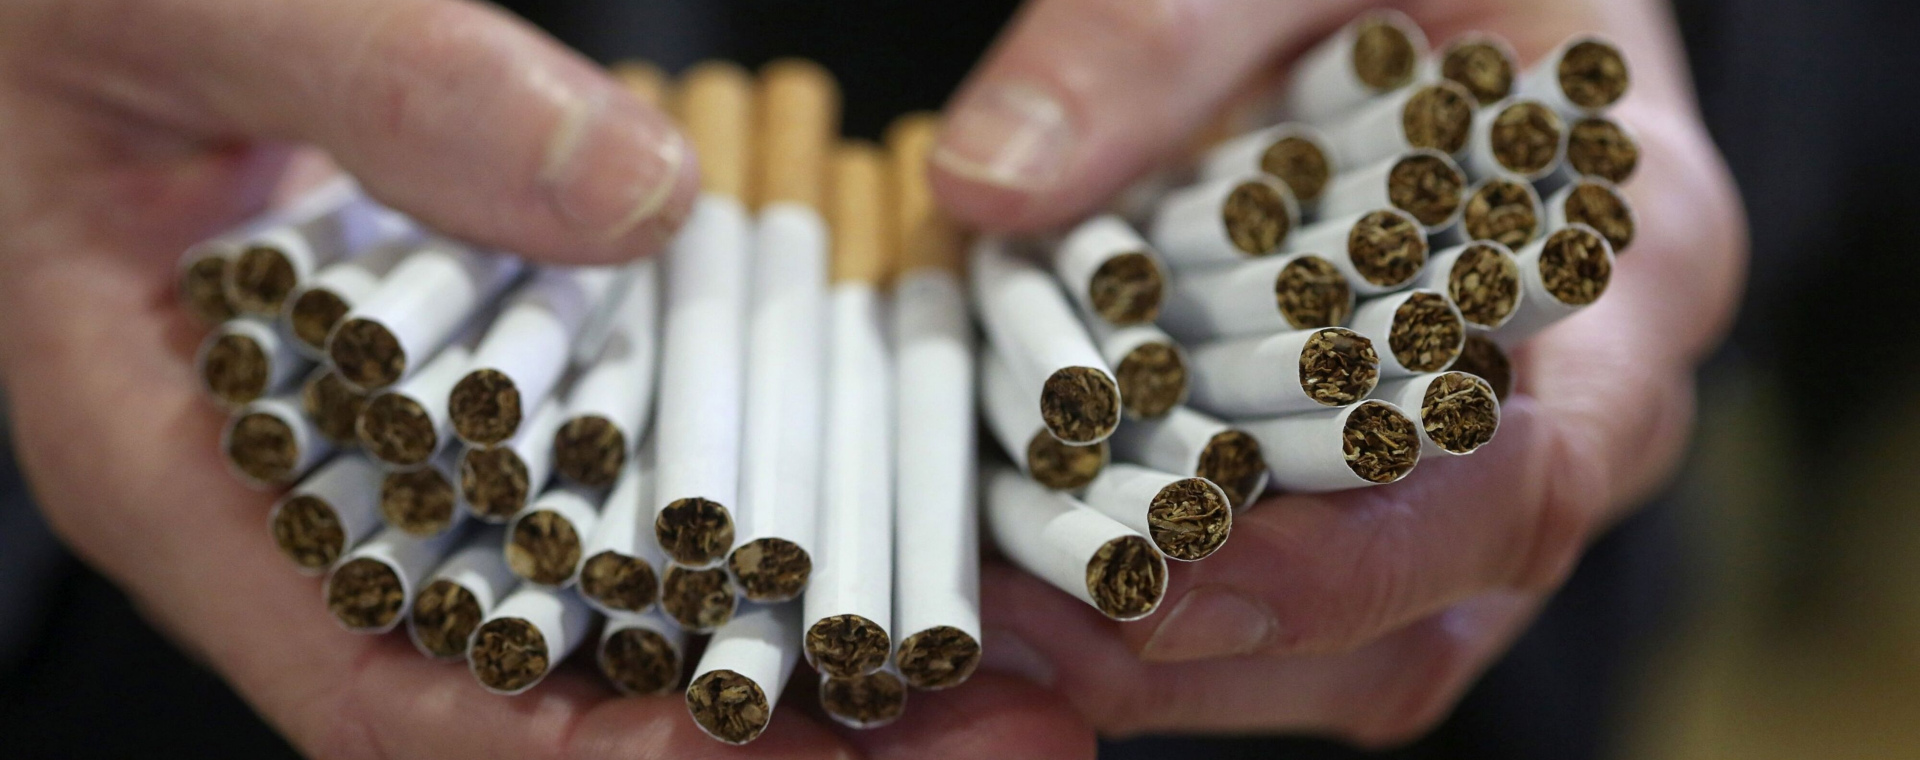  Industri Rokok Dibayangi Kebijakan Restriktif, Pemerintah Diminta Ubah Haluan